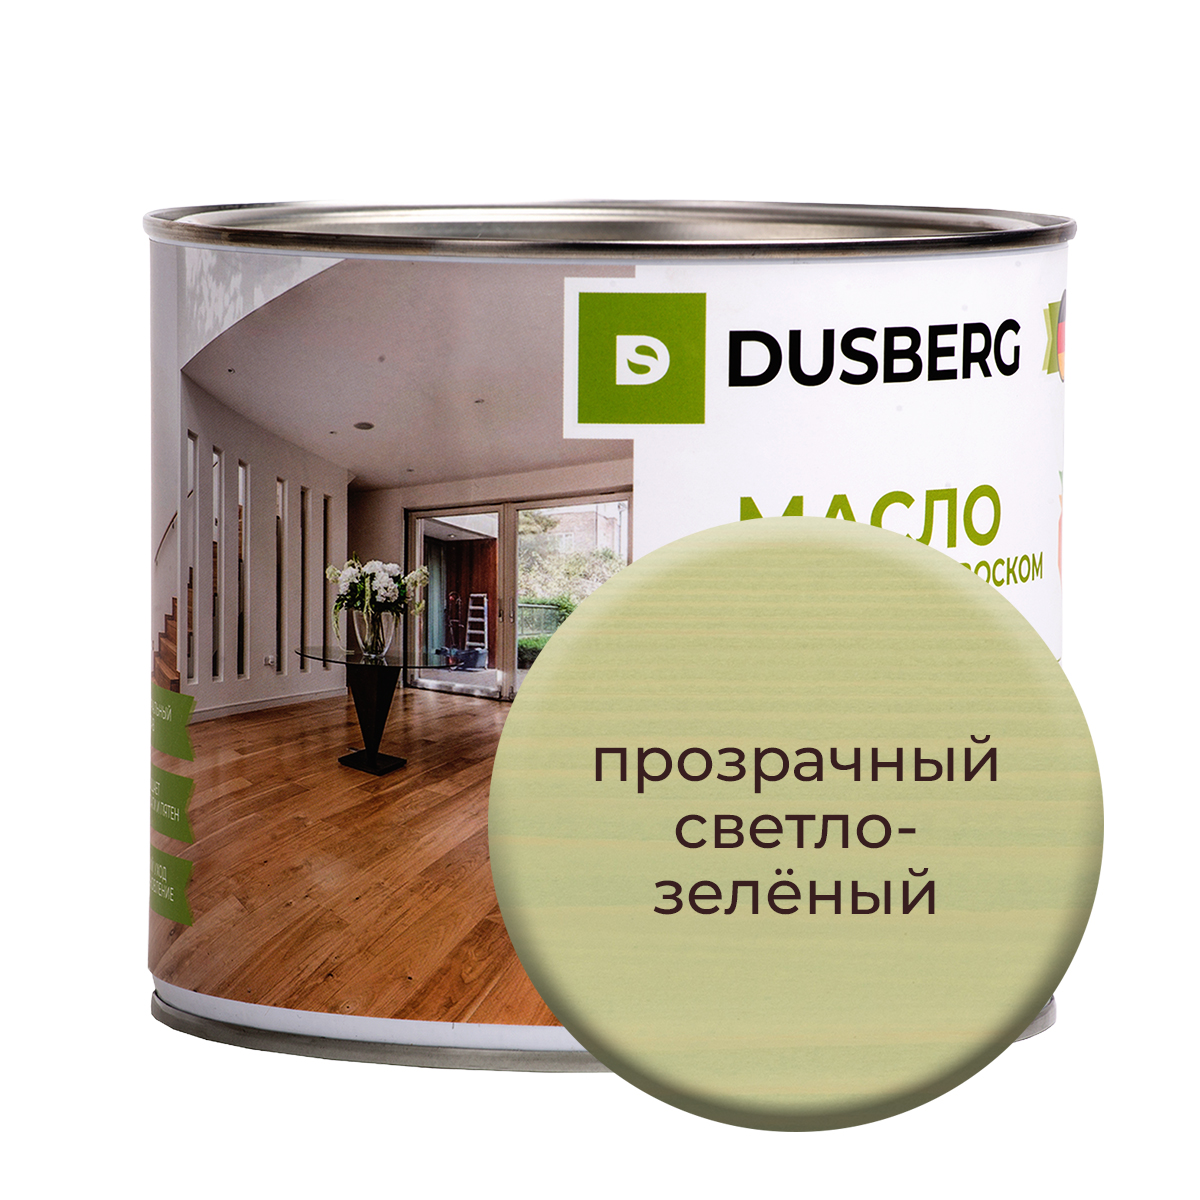 Масло Dusberg для стен на бесцветной основе, 750 мл Прозрачный светло-зеленый масло dusberg для дерева на бесцветной основе 750 мл орех